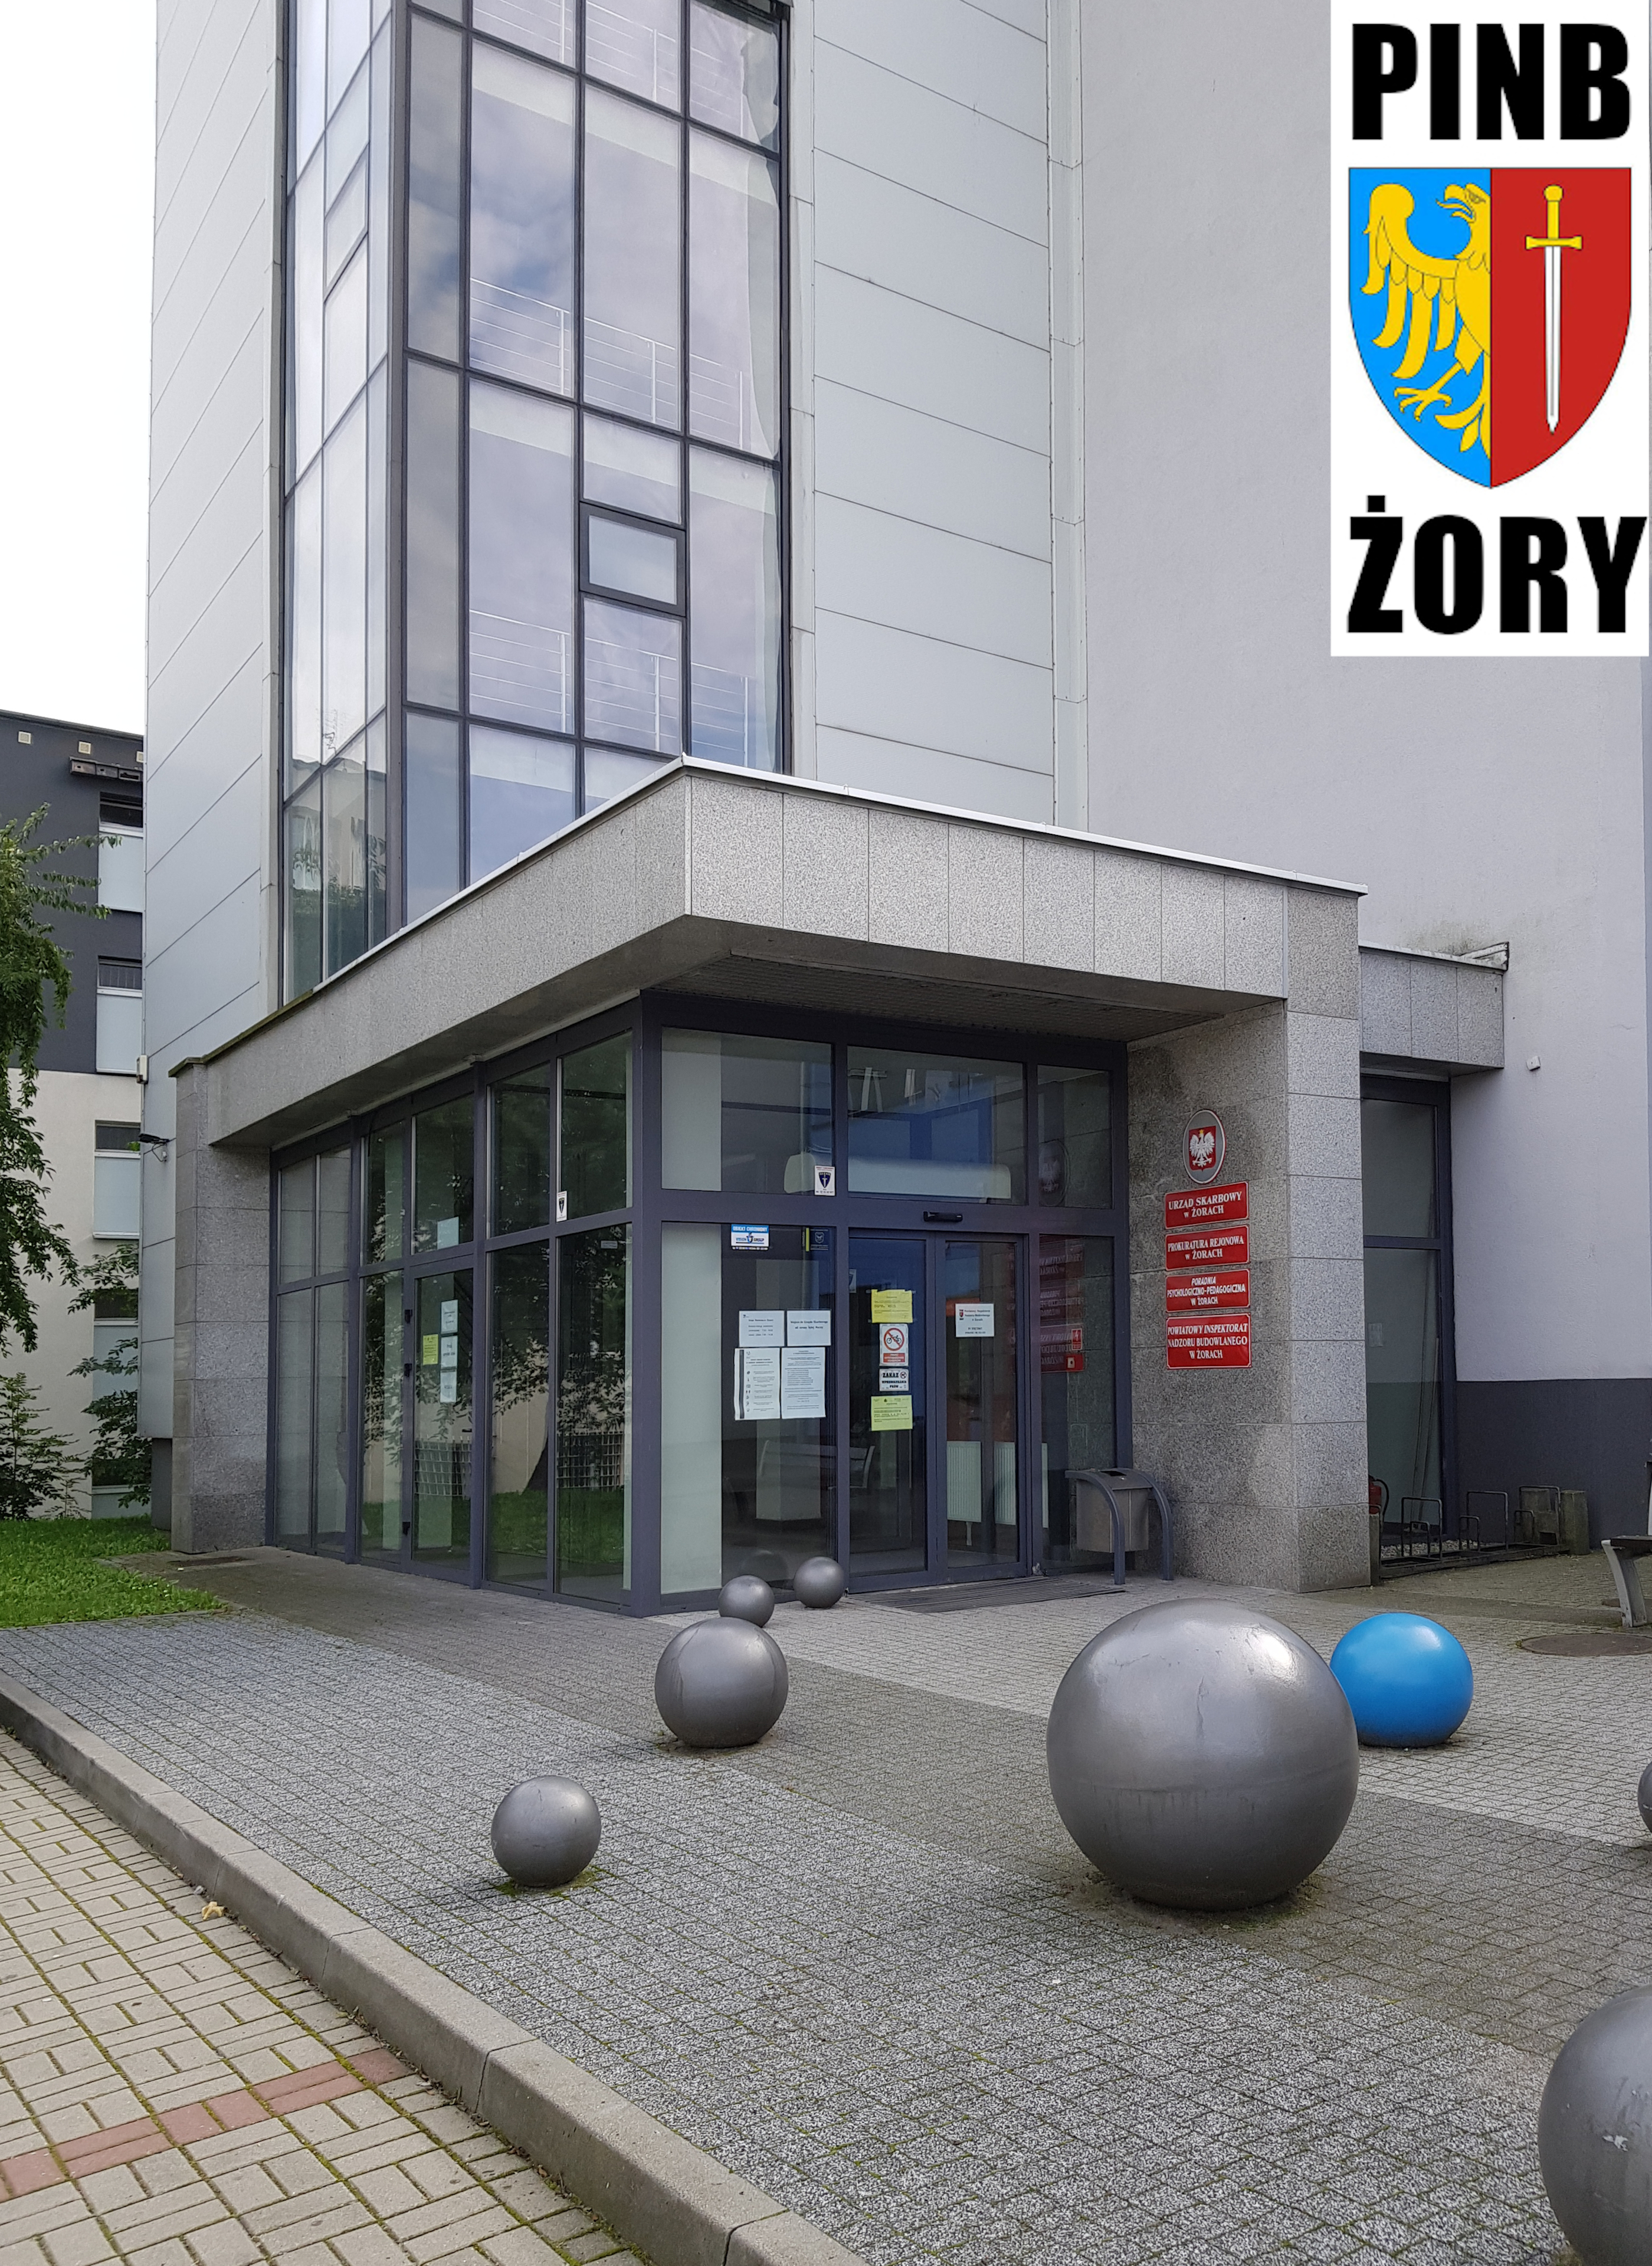 Zdjęcie wejścia do budynku przy ul. Wodzisławskiej 1 w Żorach. W prawym górnym rogu logo PINB.